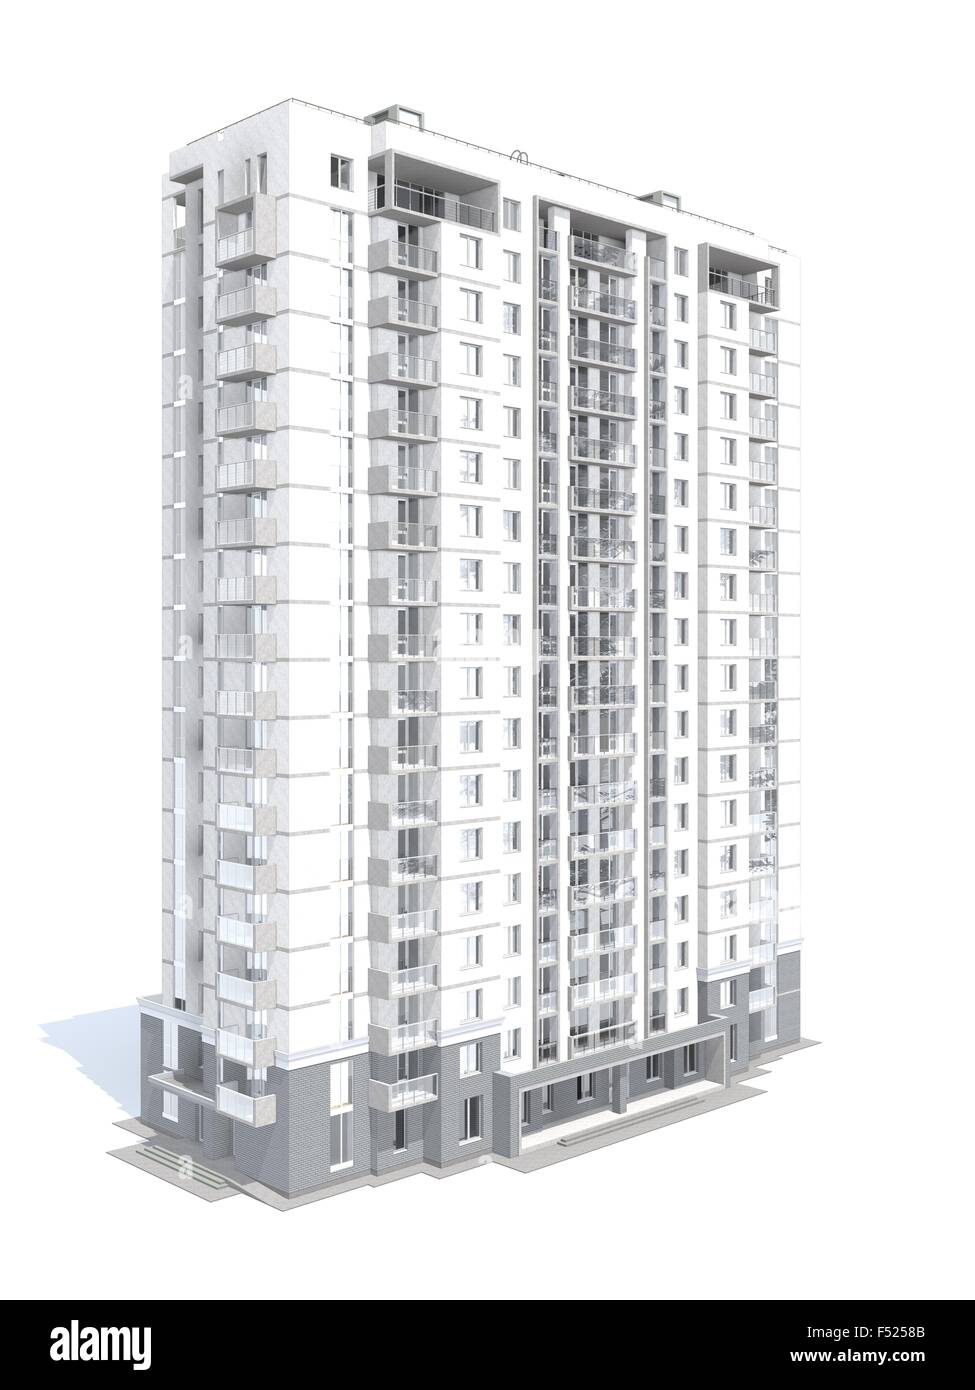 Le rendu 3D de bâtiment moderne de plusieurs étages du bâtiment résidentiel isolated on white Banque D'Images